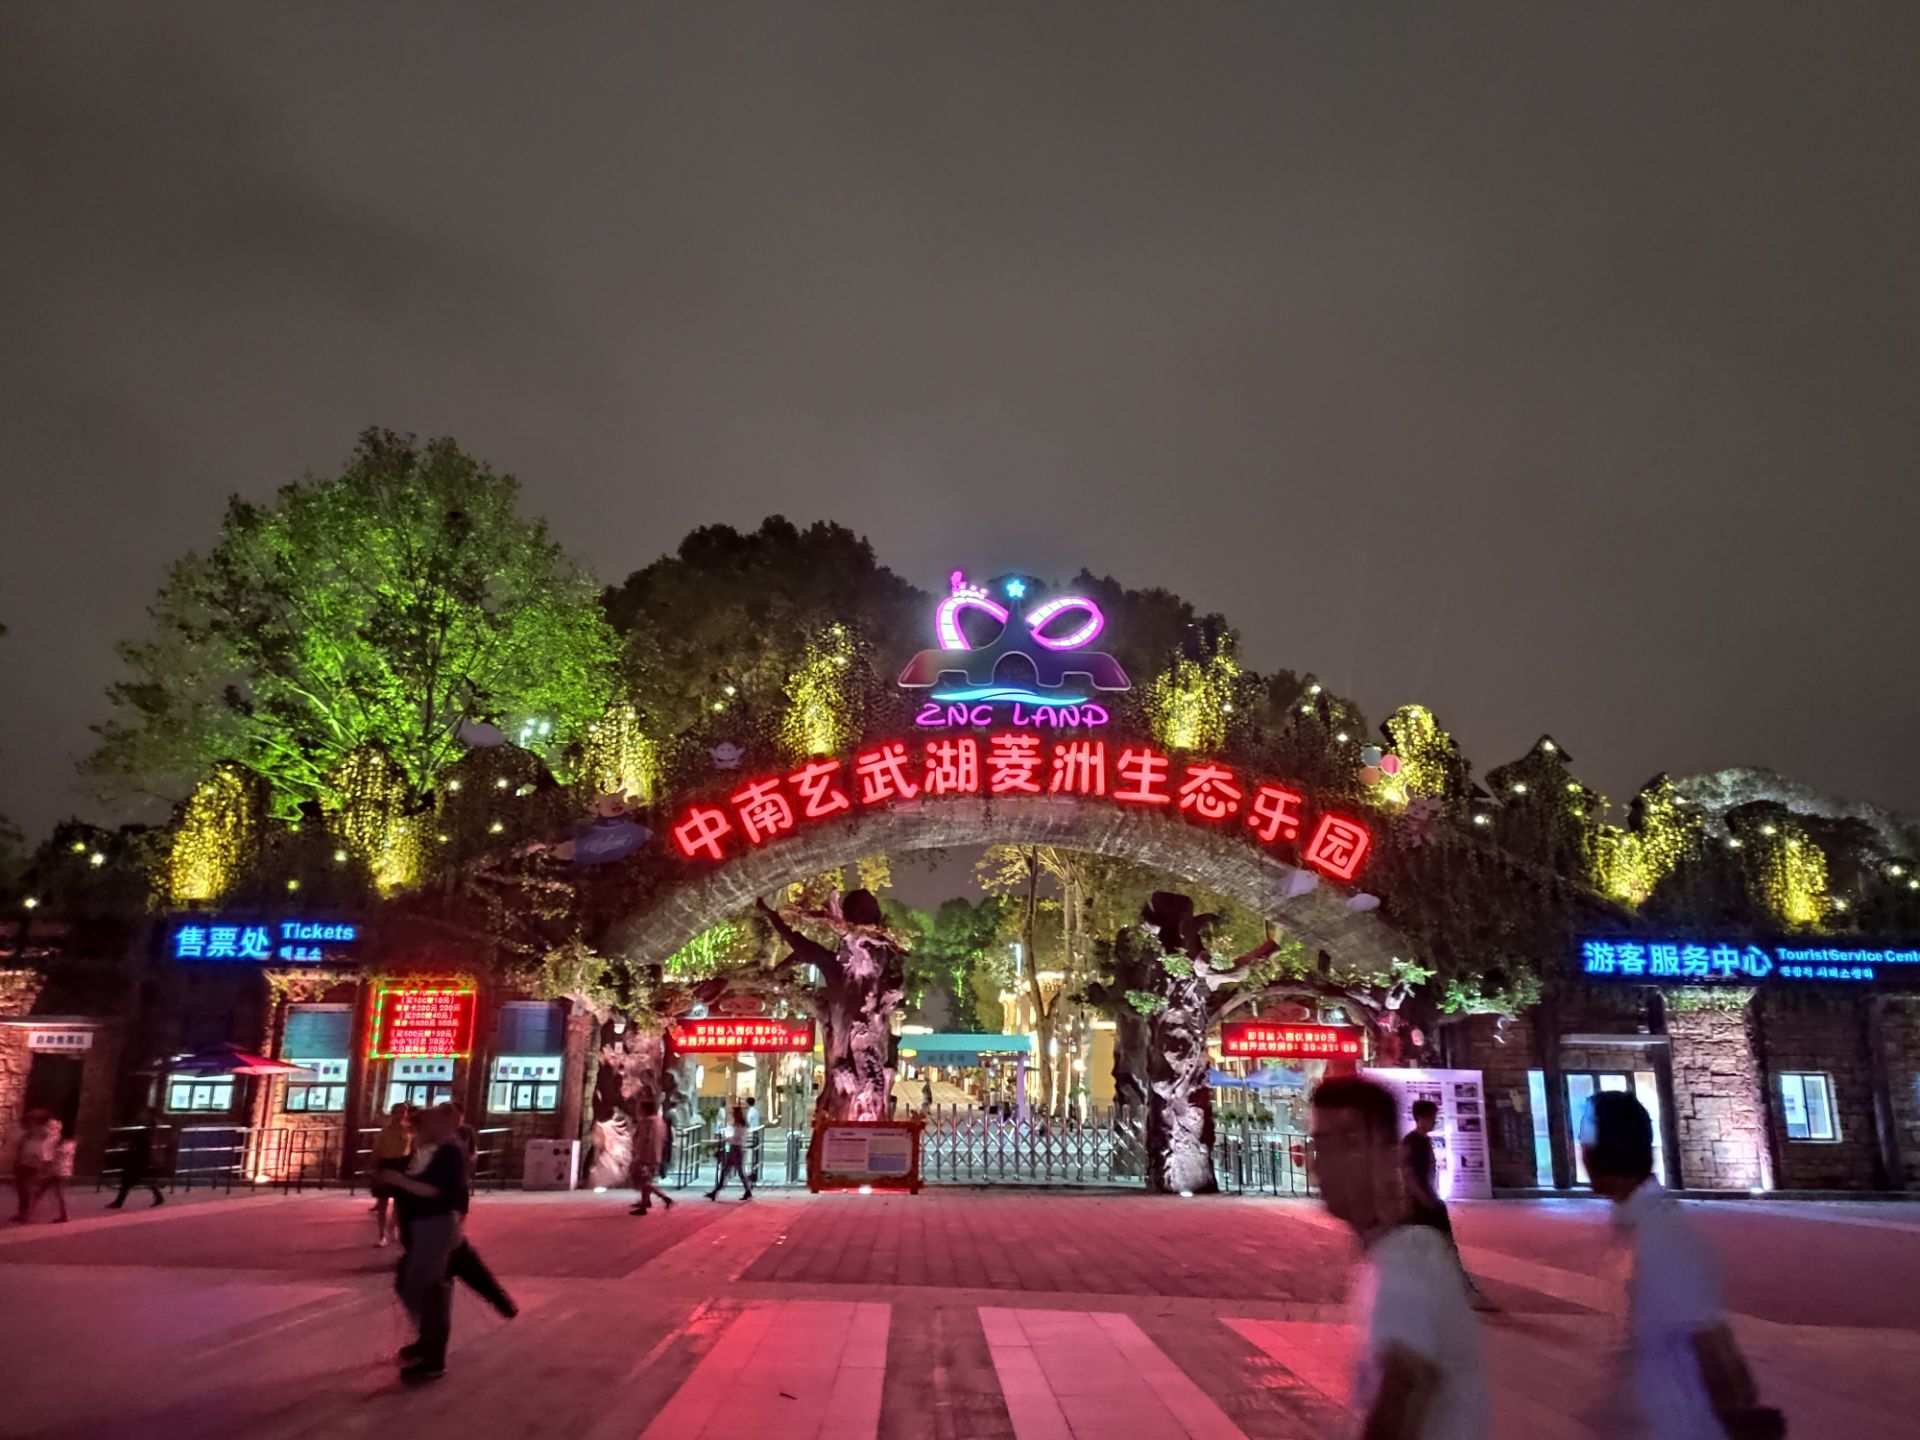 【携程攻略】南京南京万达乐园景点,人很少，完全不用排队，可能和地方远还有宣传不够有关。原价定的偏贵…